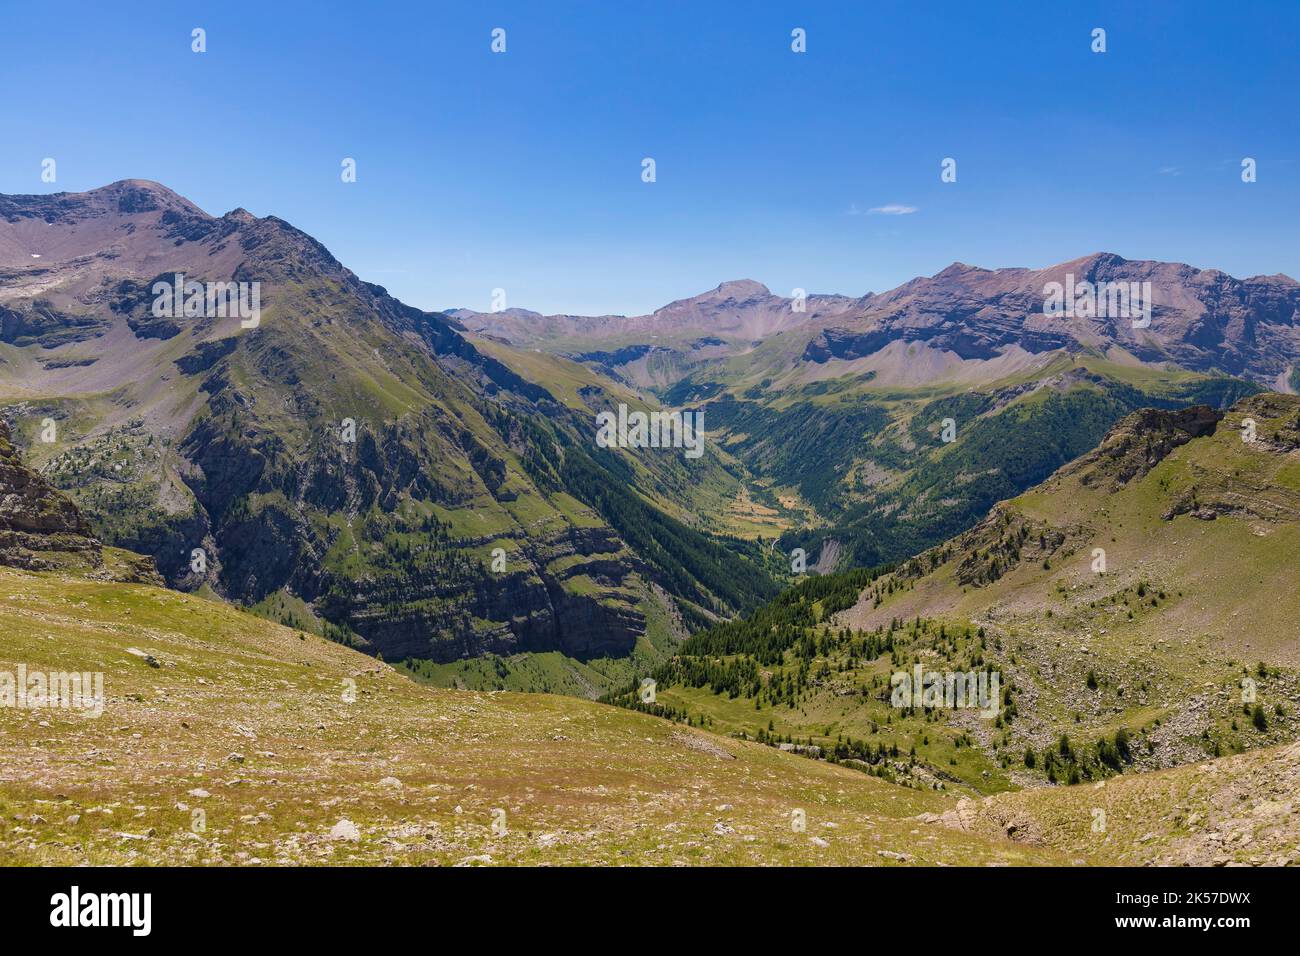 France, Hautes Alpes, Orcières, randonnée entre le lac des Jumeaux et le lac des caisses, vallée du DRAC Noir Banque D'Images